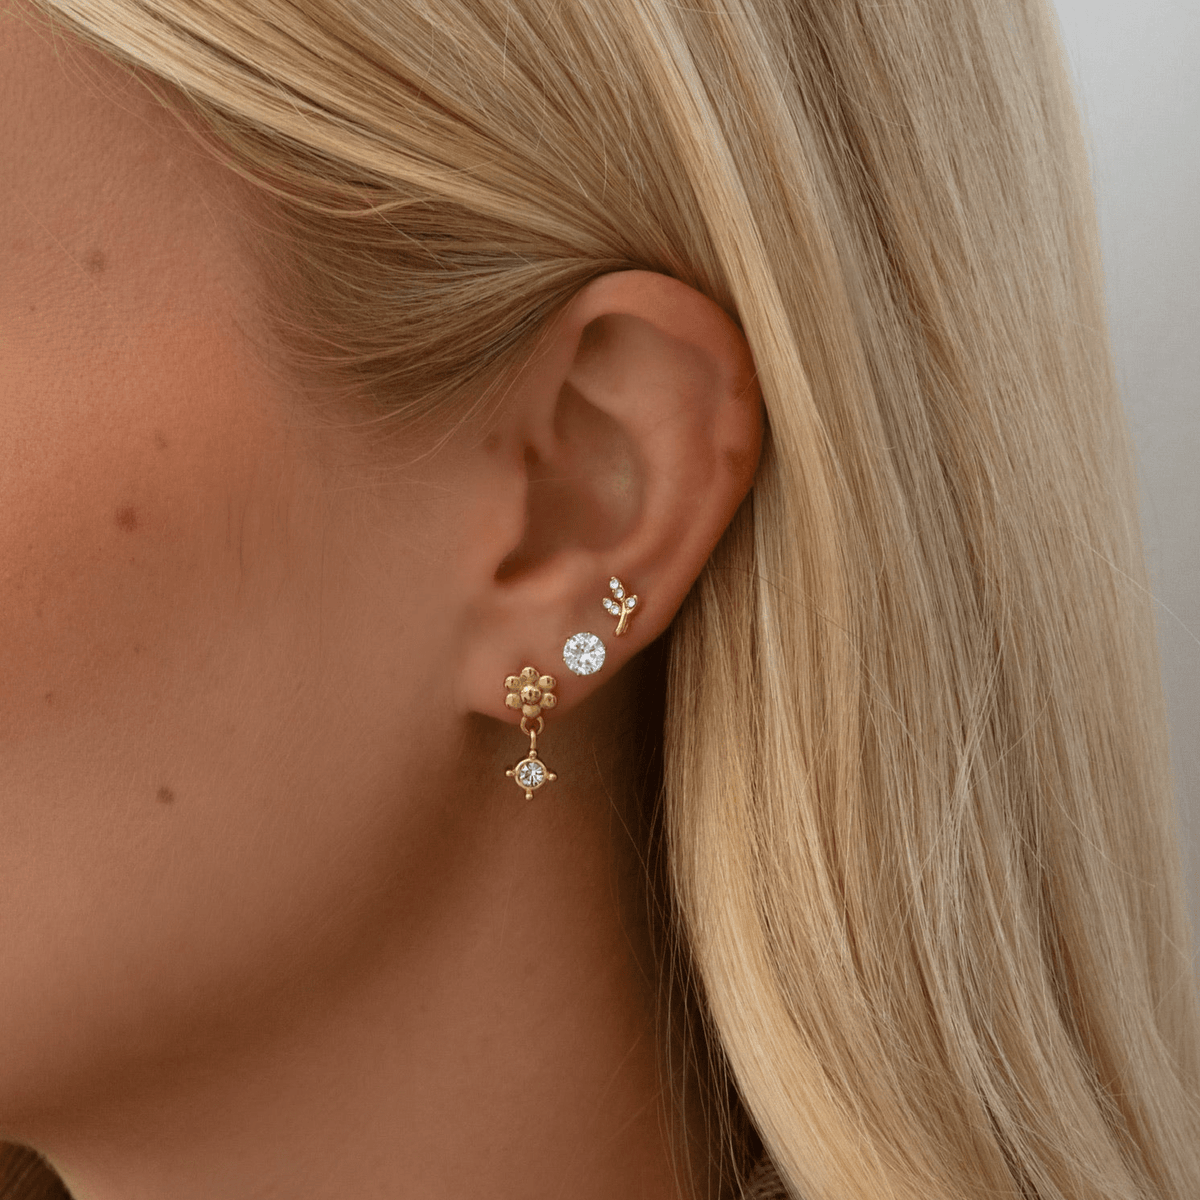 Bohomoon Stainless Steel Elizabeth Stud Earrings